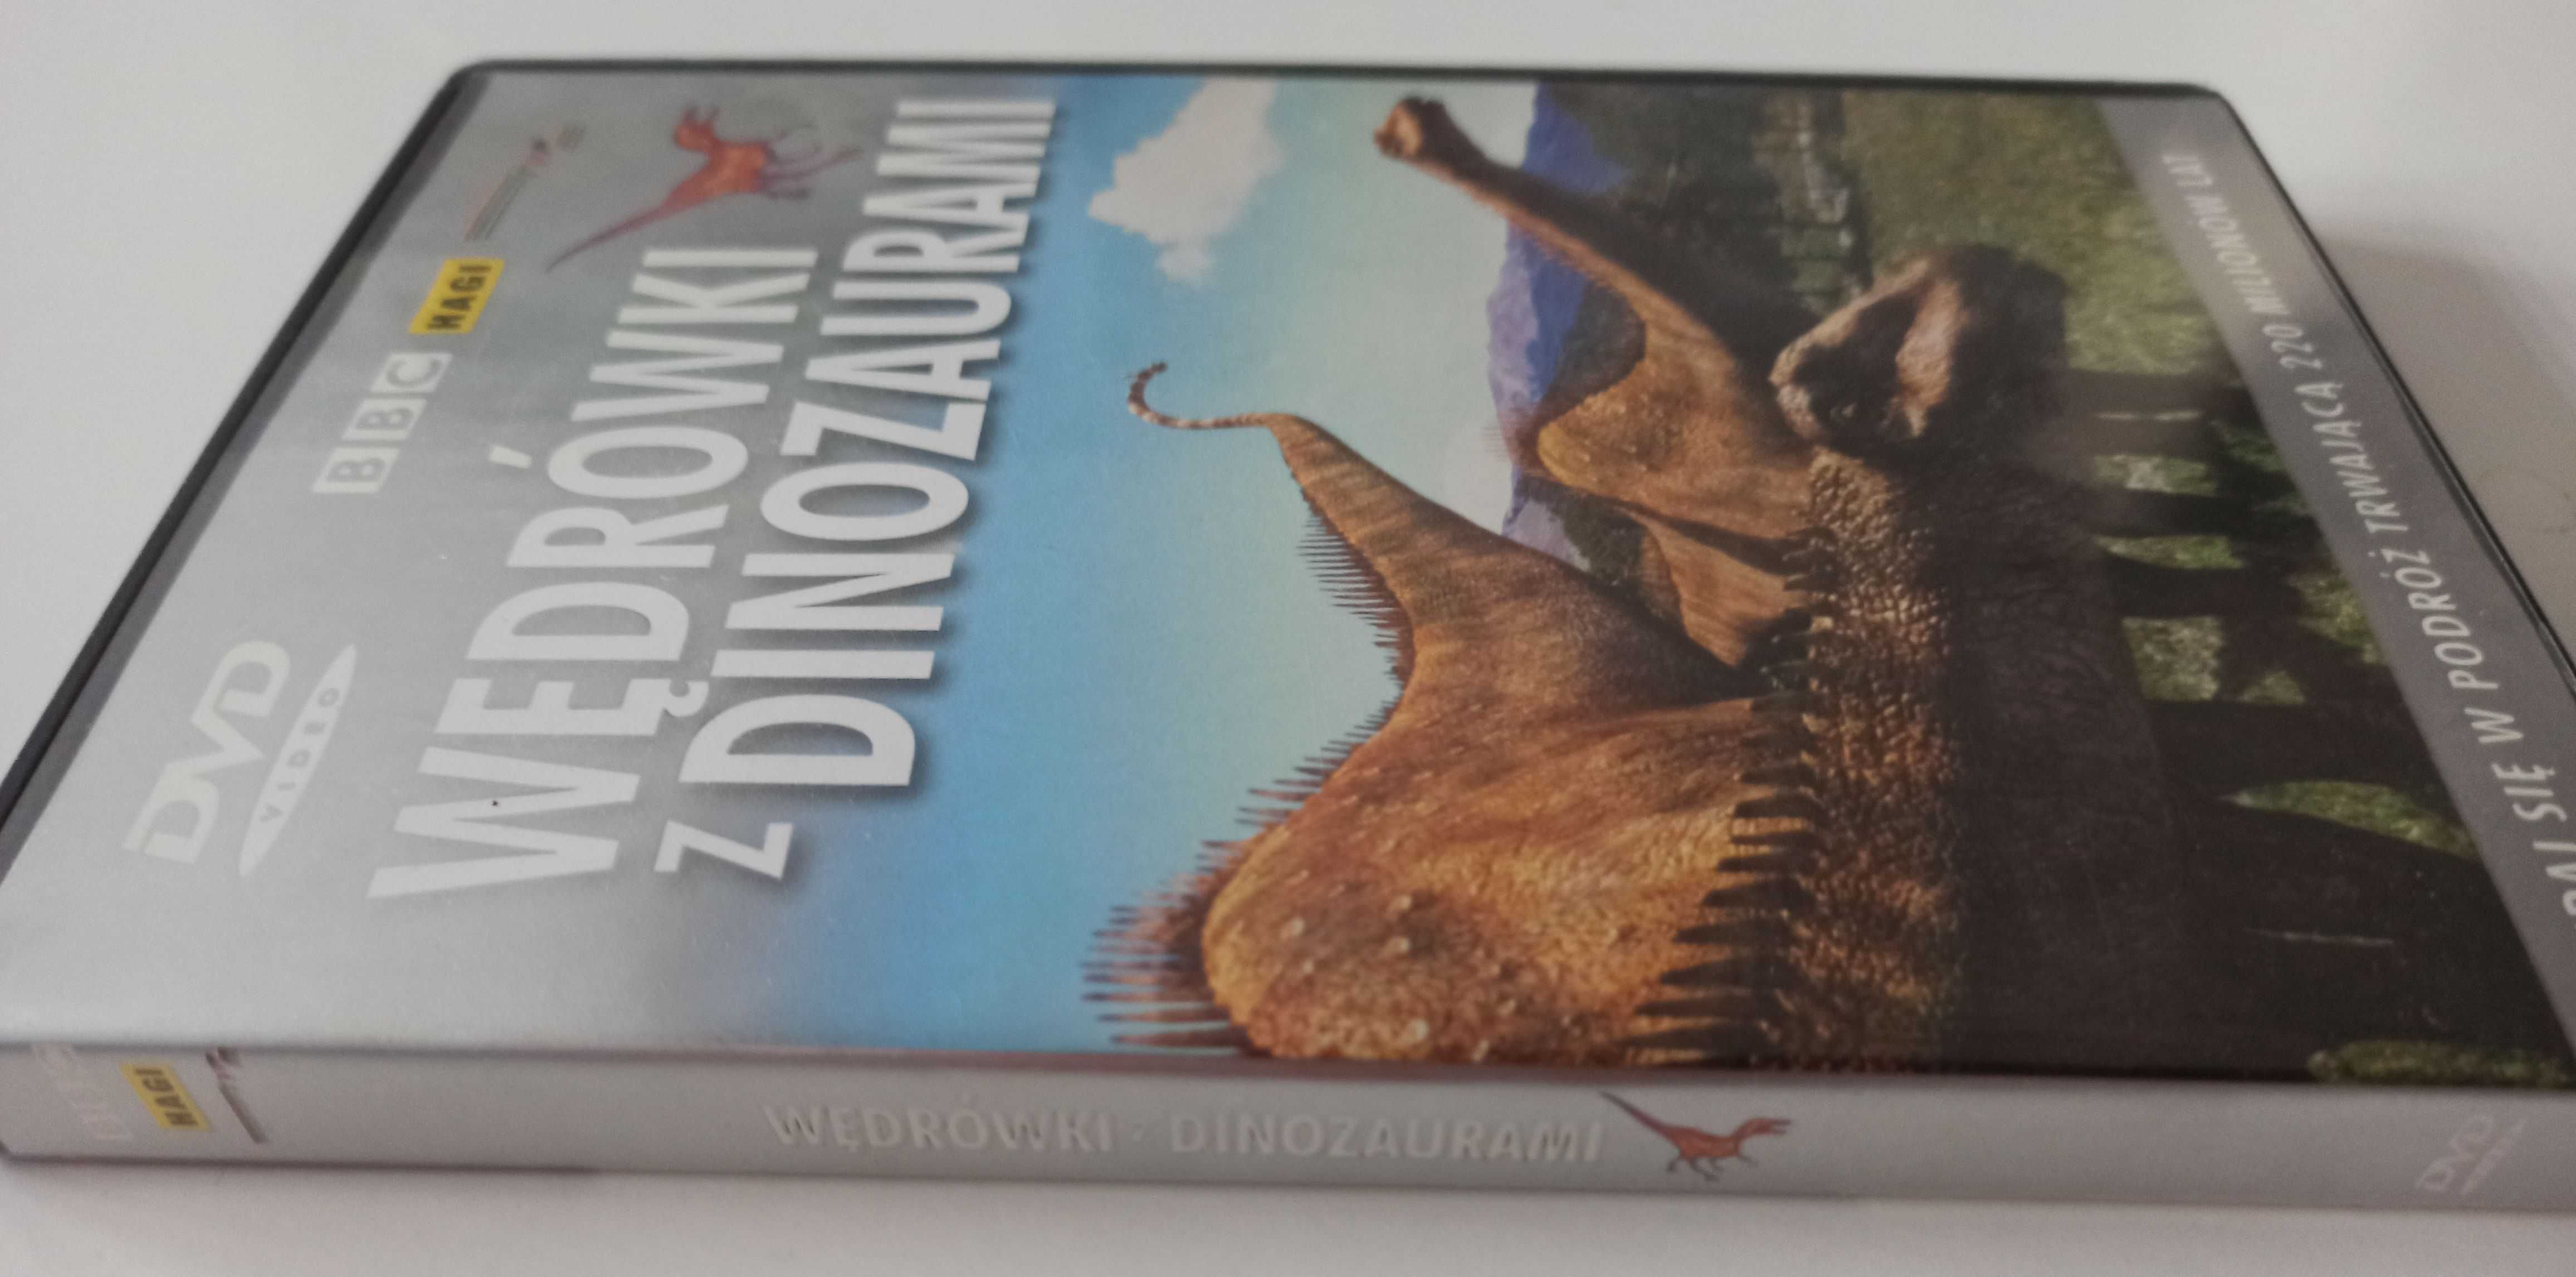 Wędrówki z dinozaurami - film edukacyjny płyta DVD dinozaury